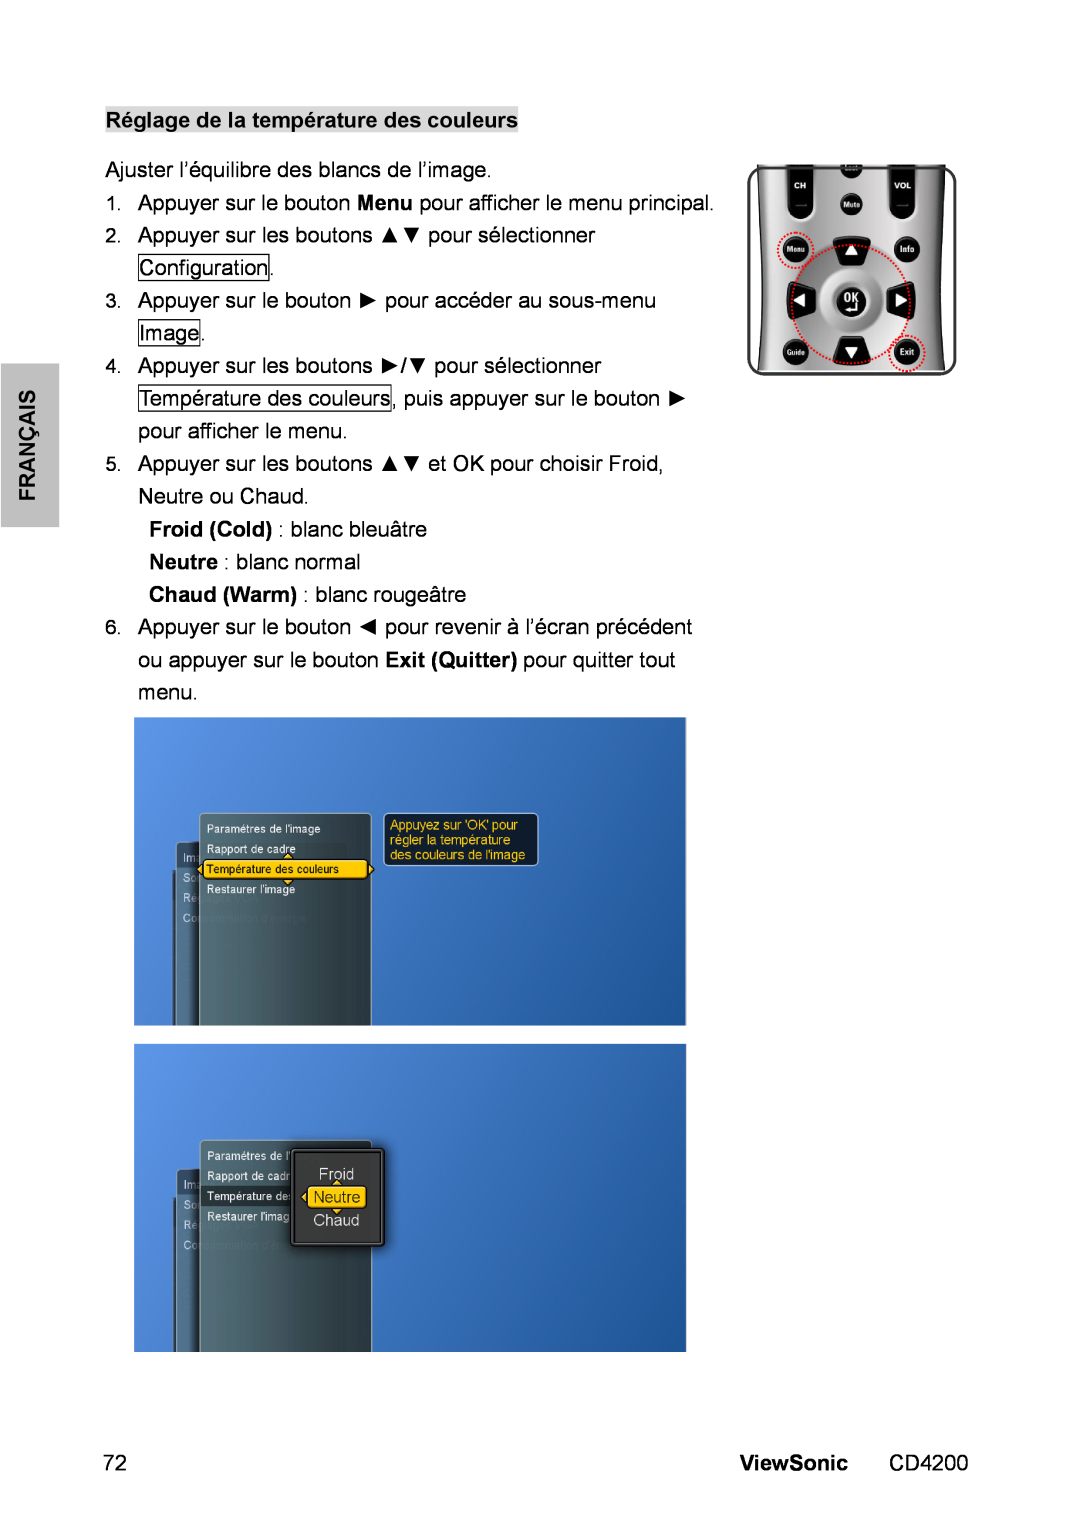 ViewSonic CD4200 manual Réglage de la température des couleurs, Français, ViewSonic 